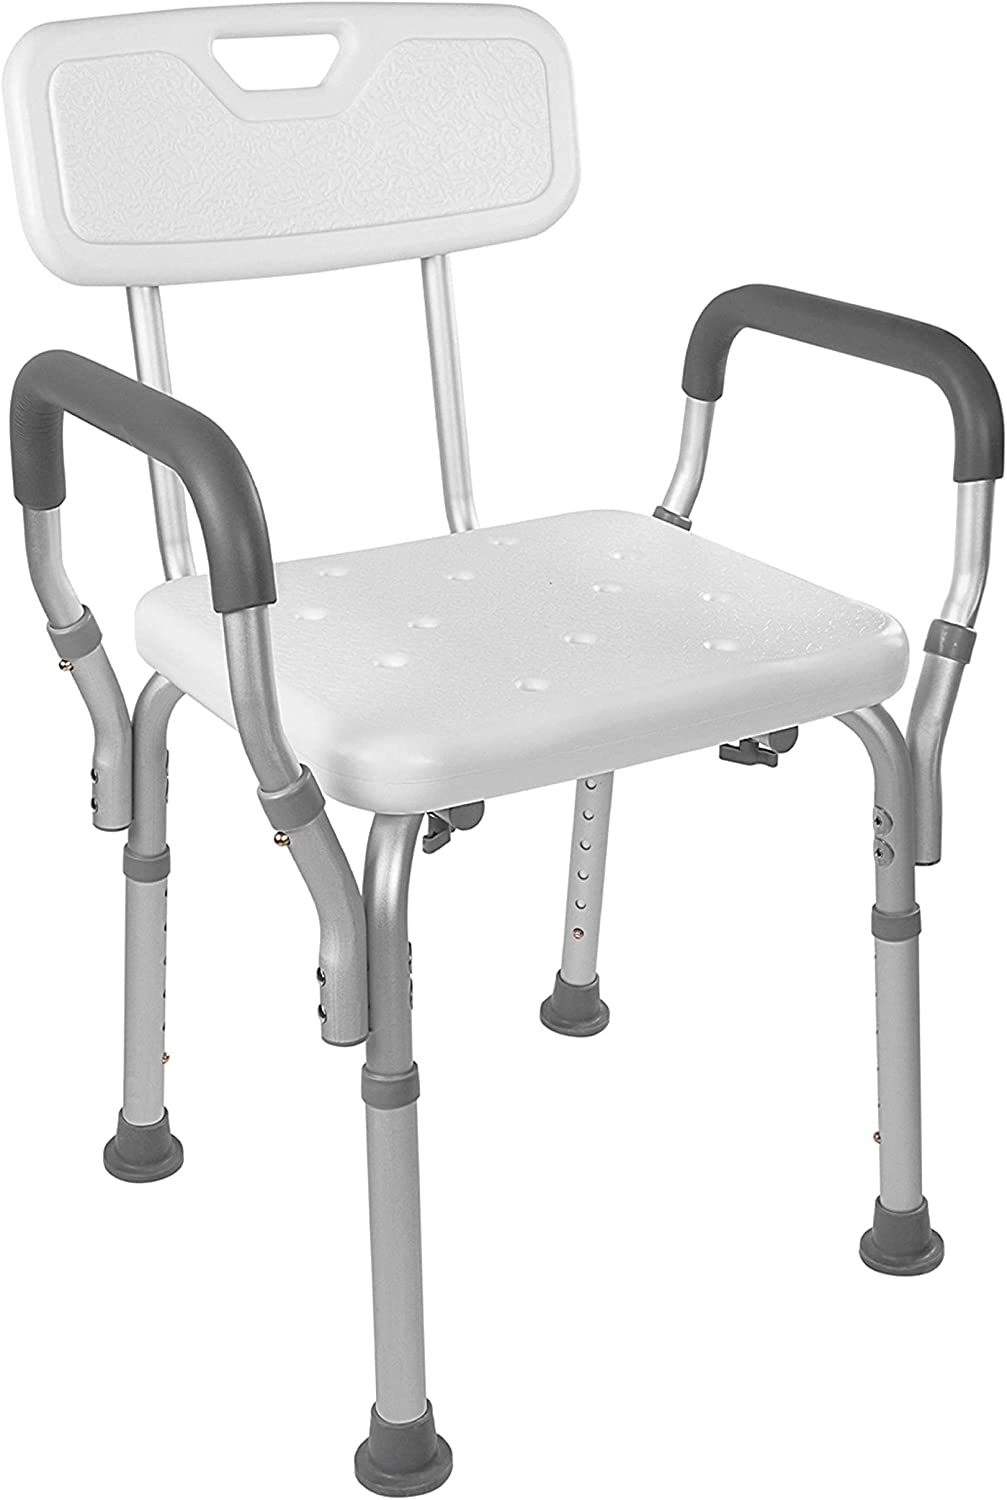 Vaunn Medical Shower Lift Chair